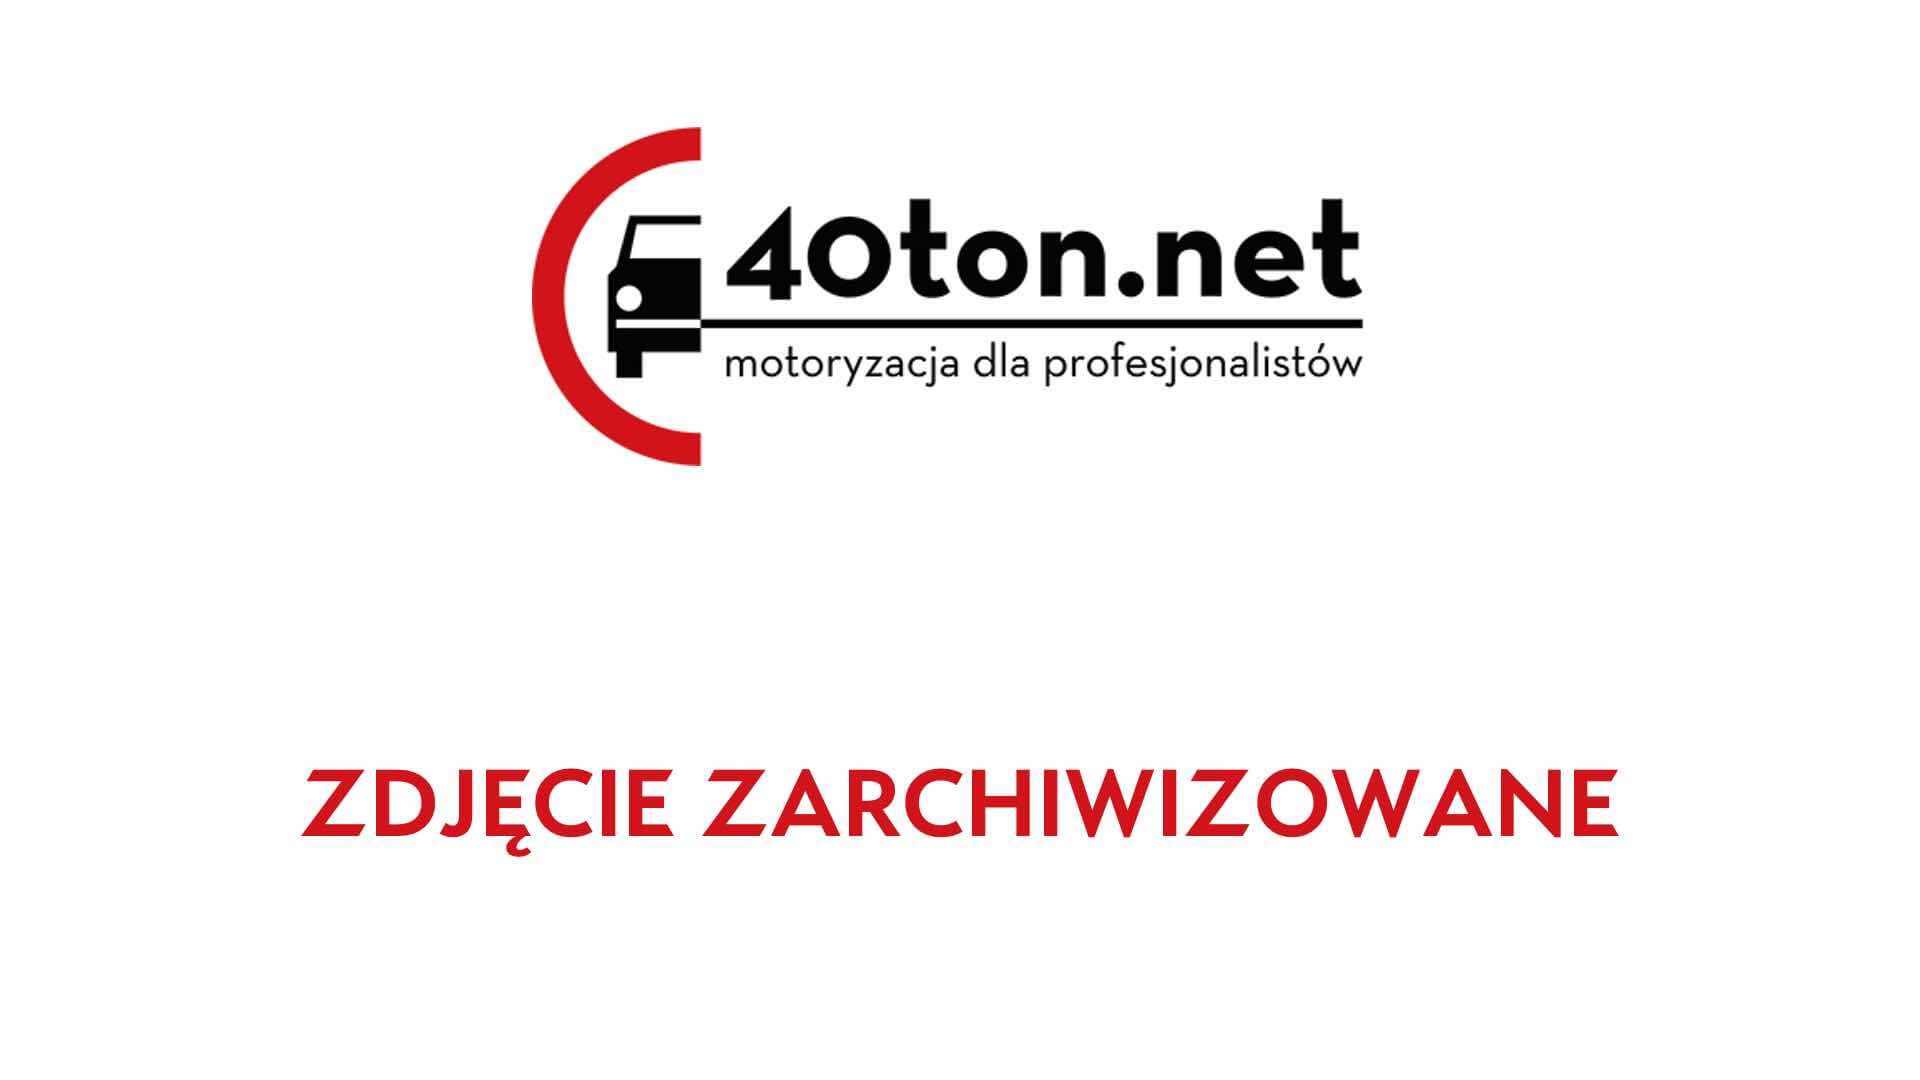 polskie_ciezarowki_40ton_truckspotters_1301